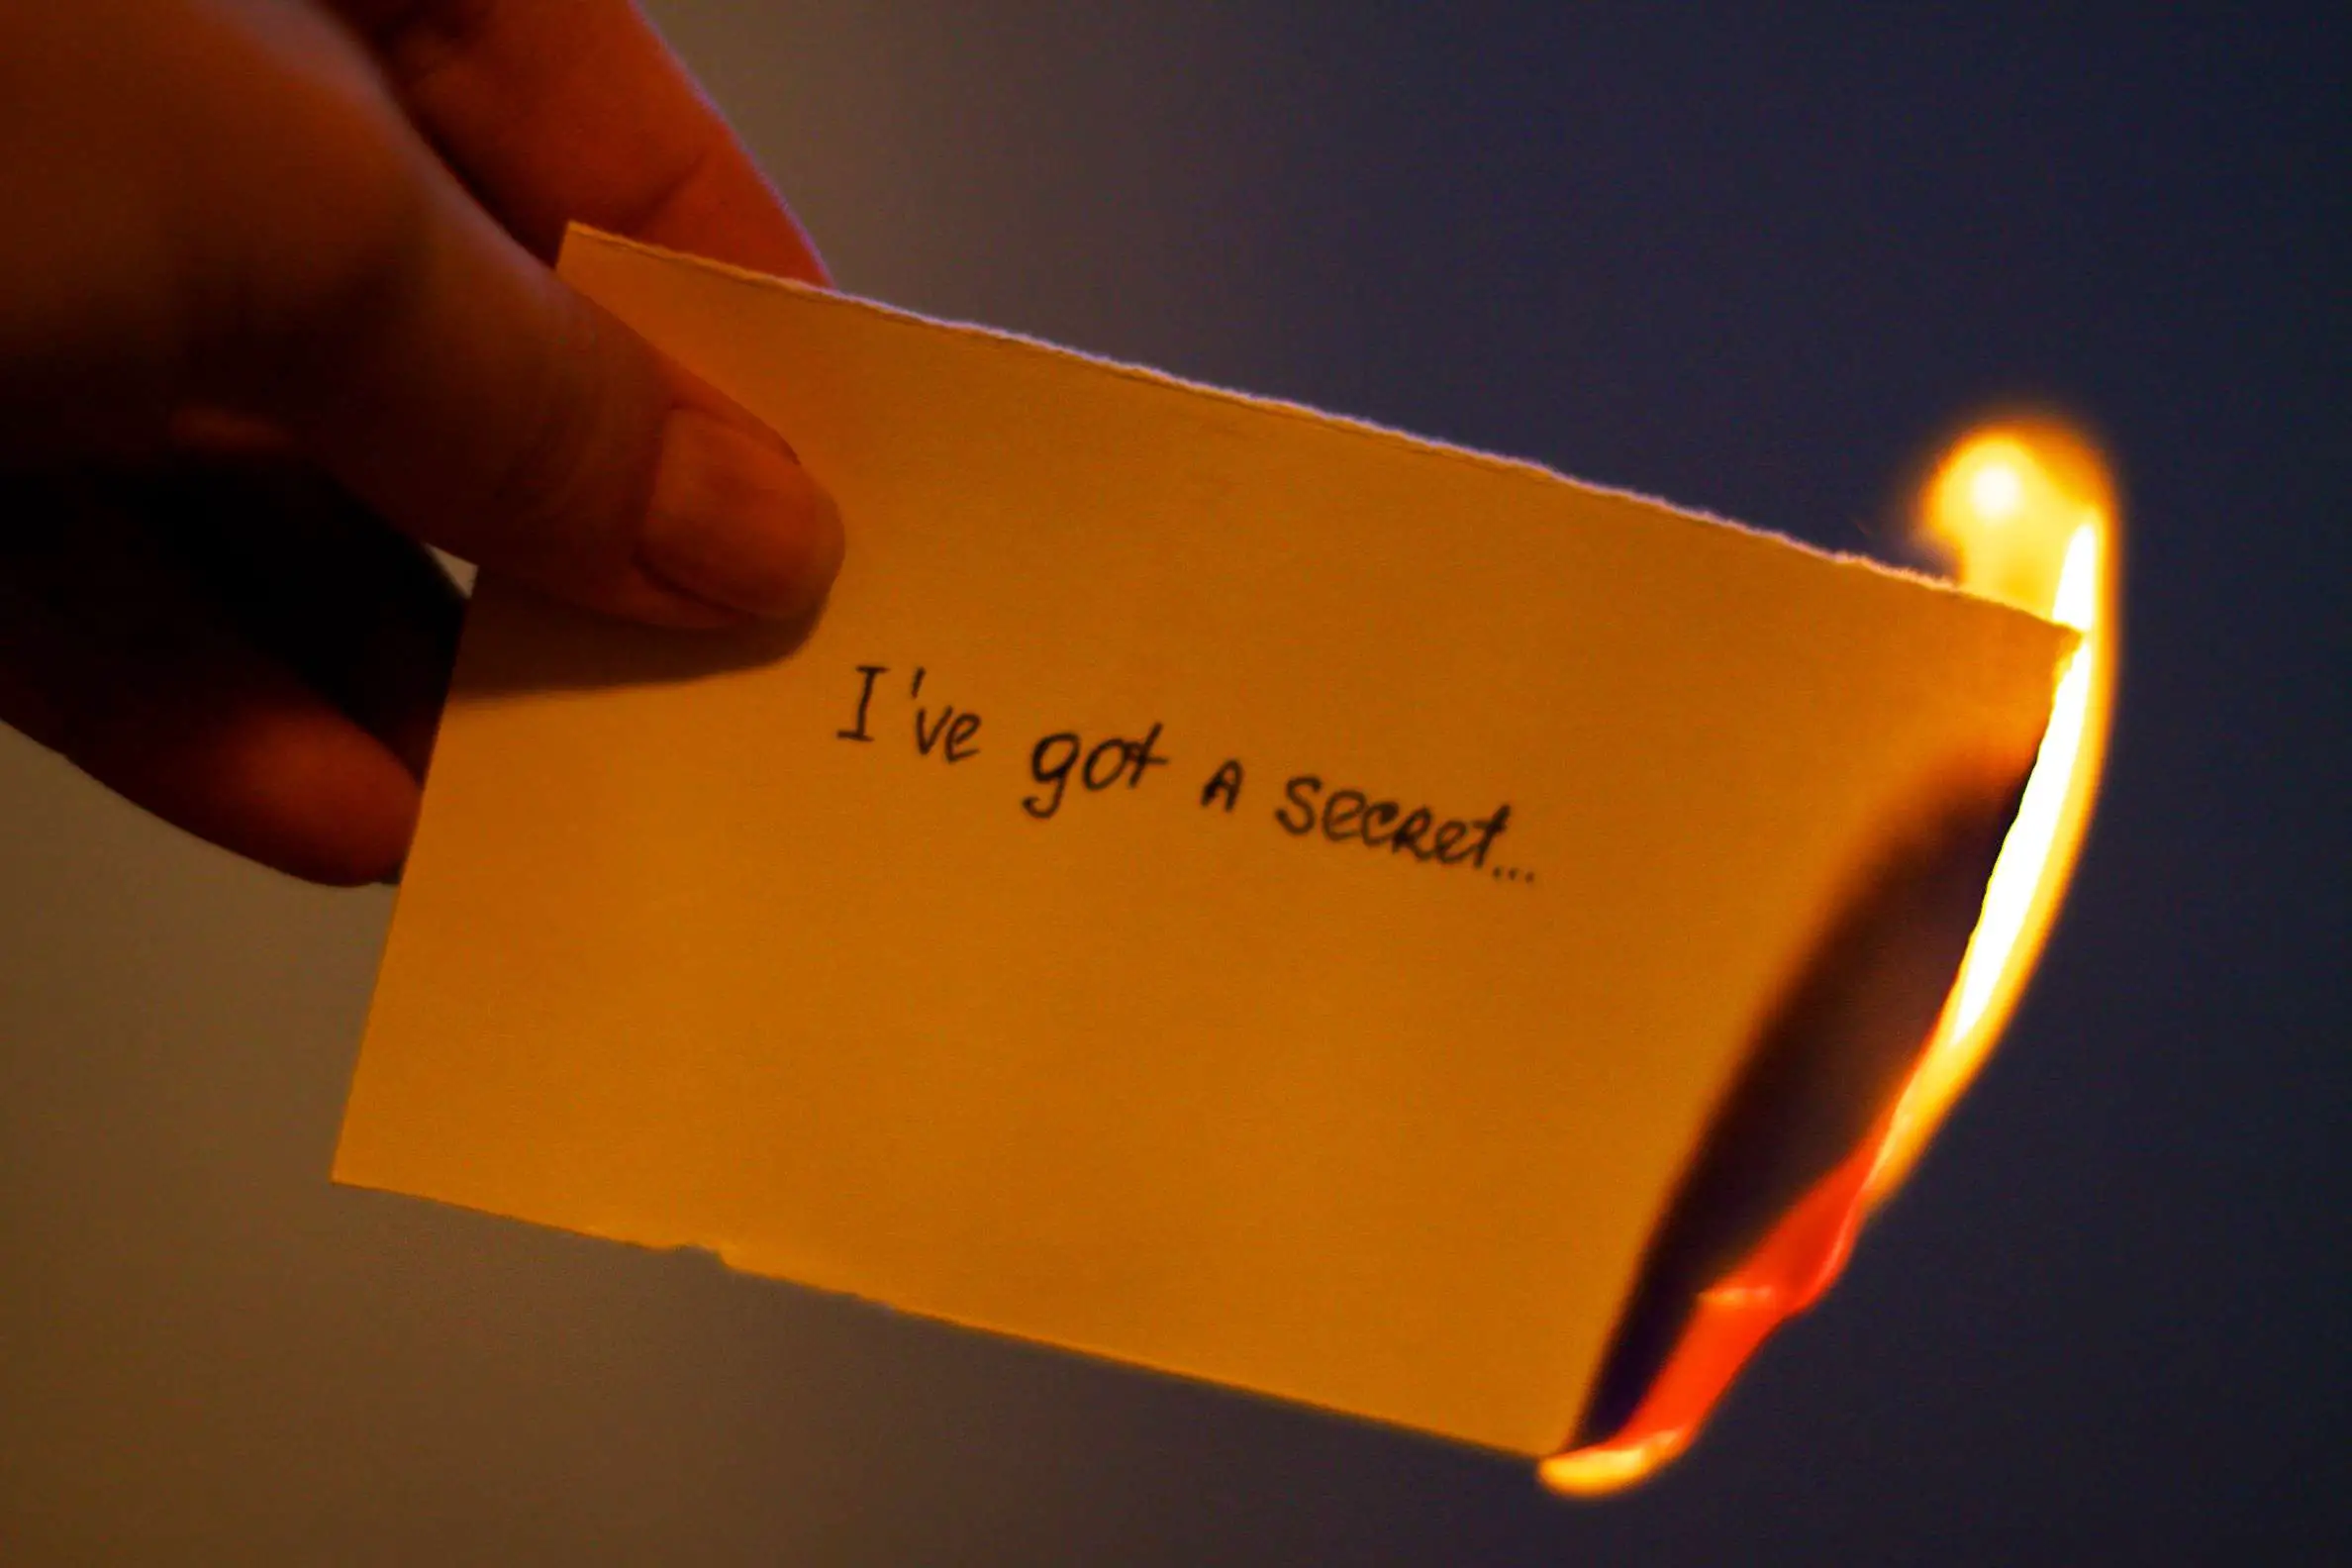 Papel em chamas que diz "Eu tenho um segredo ..."